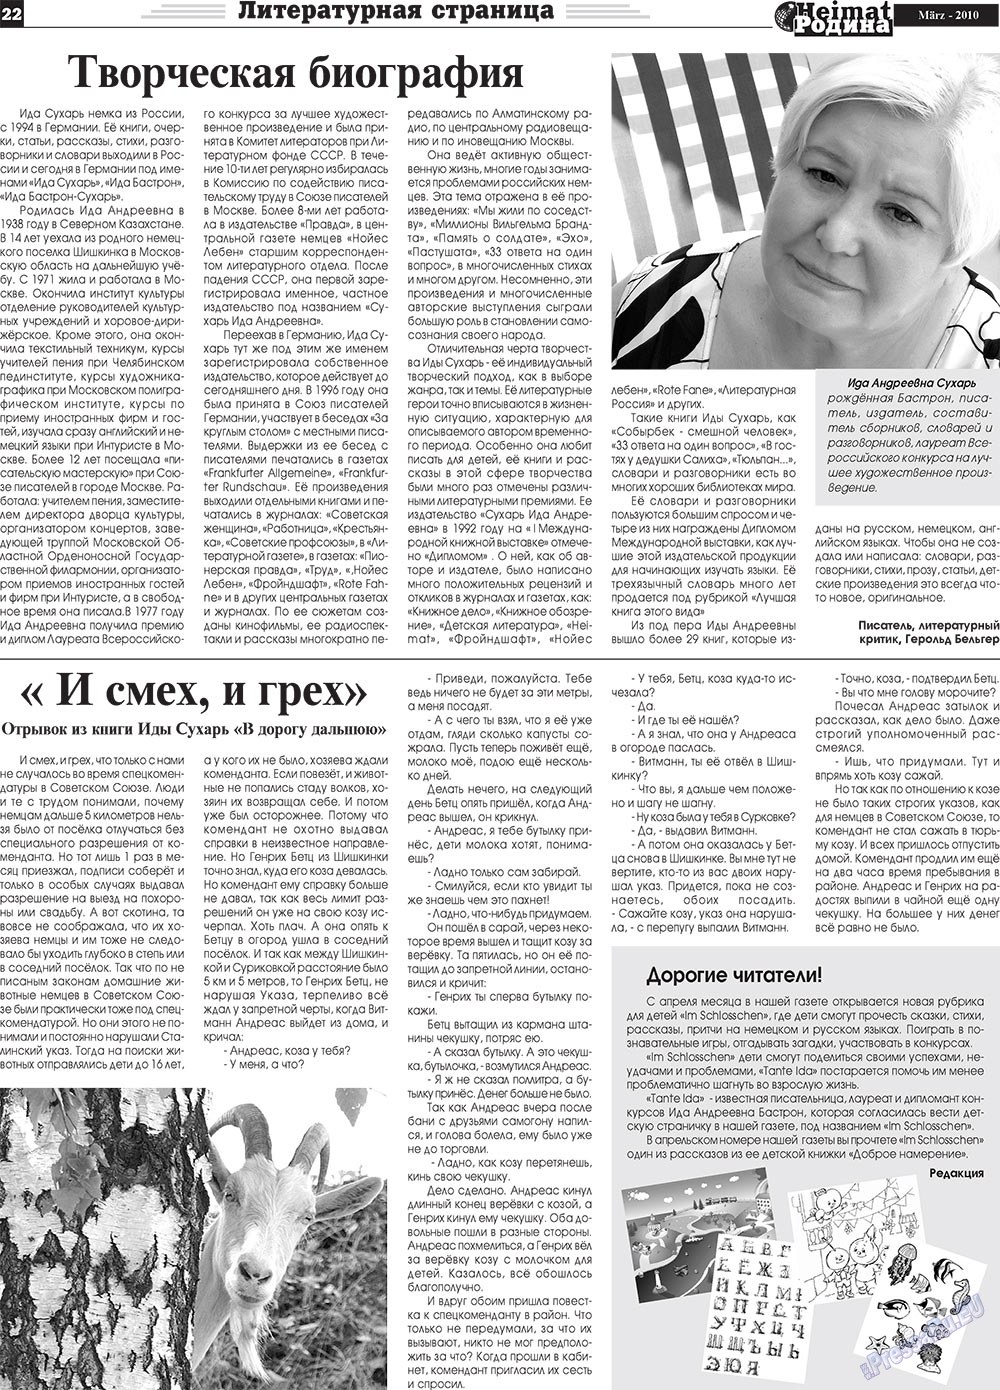 Heimat-Родина (газета). 2010 год, номер 3, стр. 22